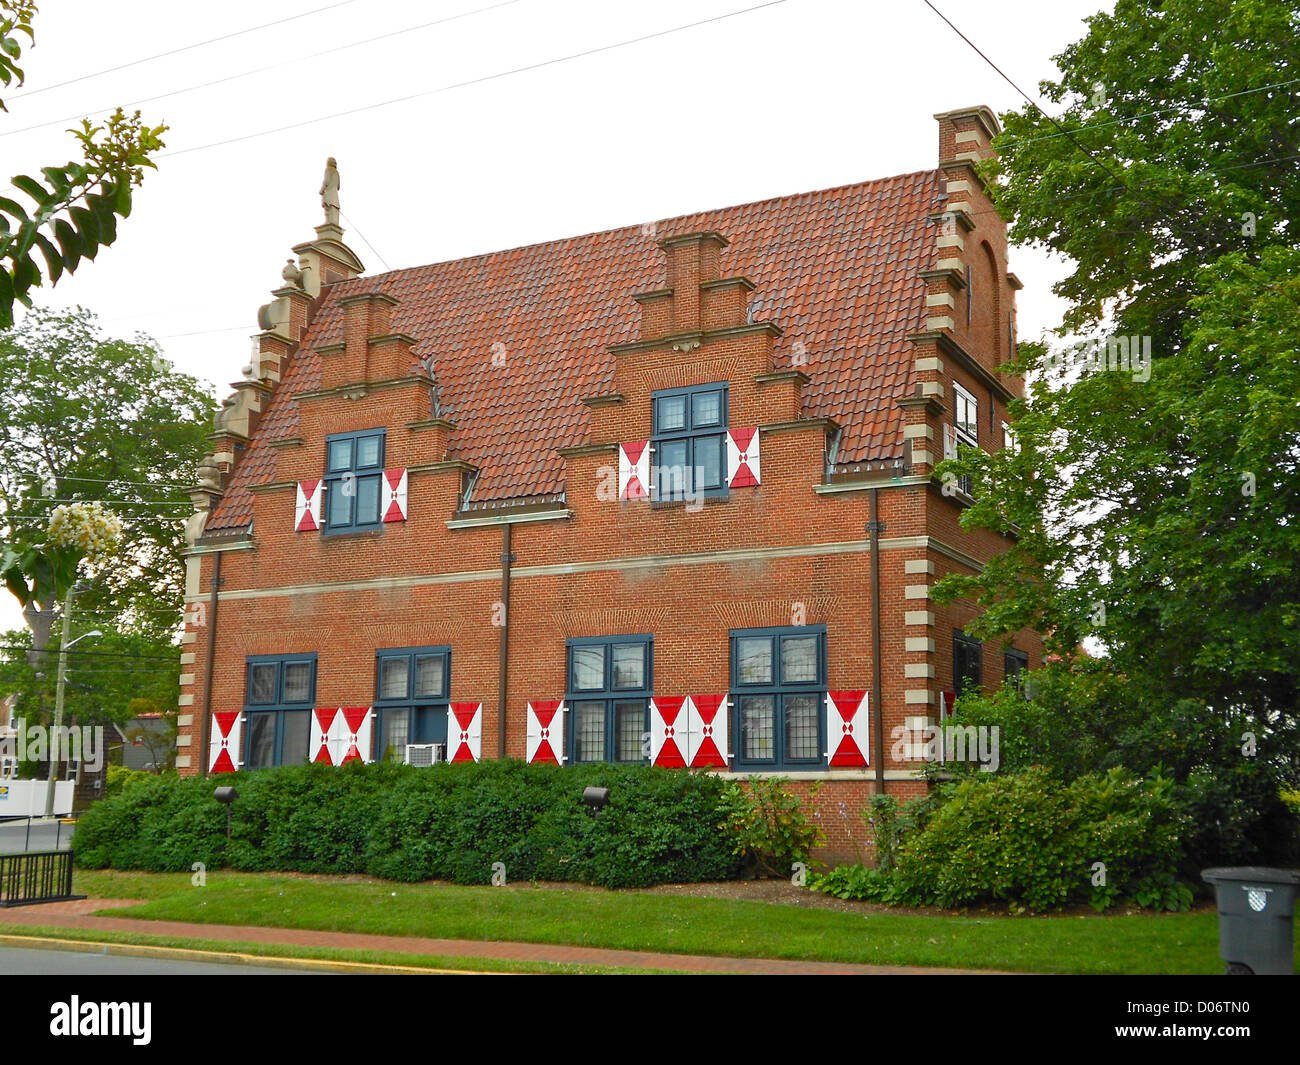 Club Zwaanendael en Lewes Delaware. Construido en 1898 como un banco, sobre la base de un edificio en los Países Bajos. Utilizado como un club de mujeres a partir de 1930. Ahora un museo. Foto de stock